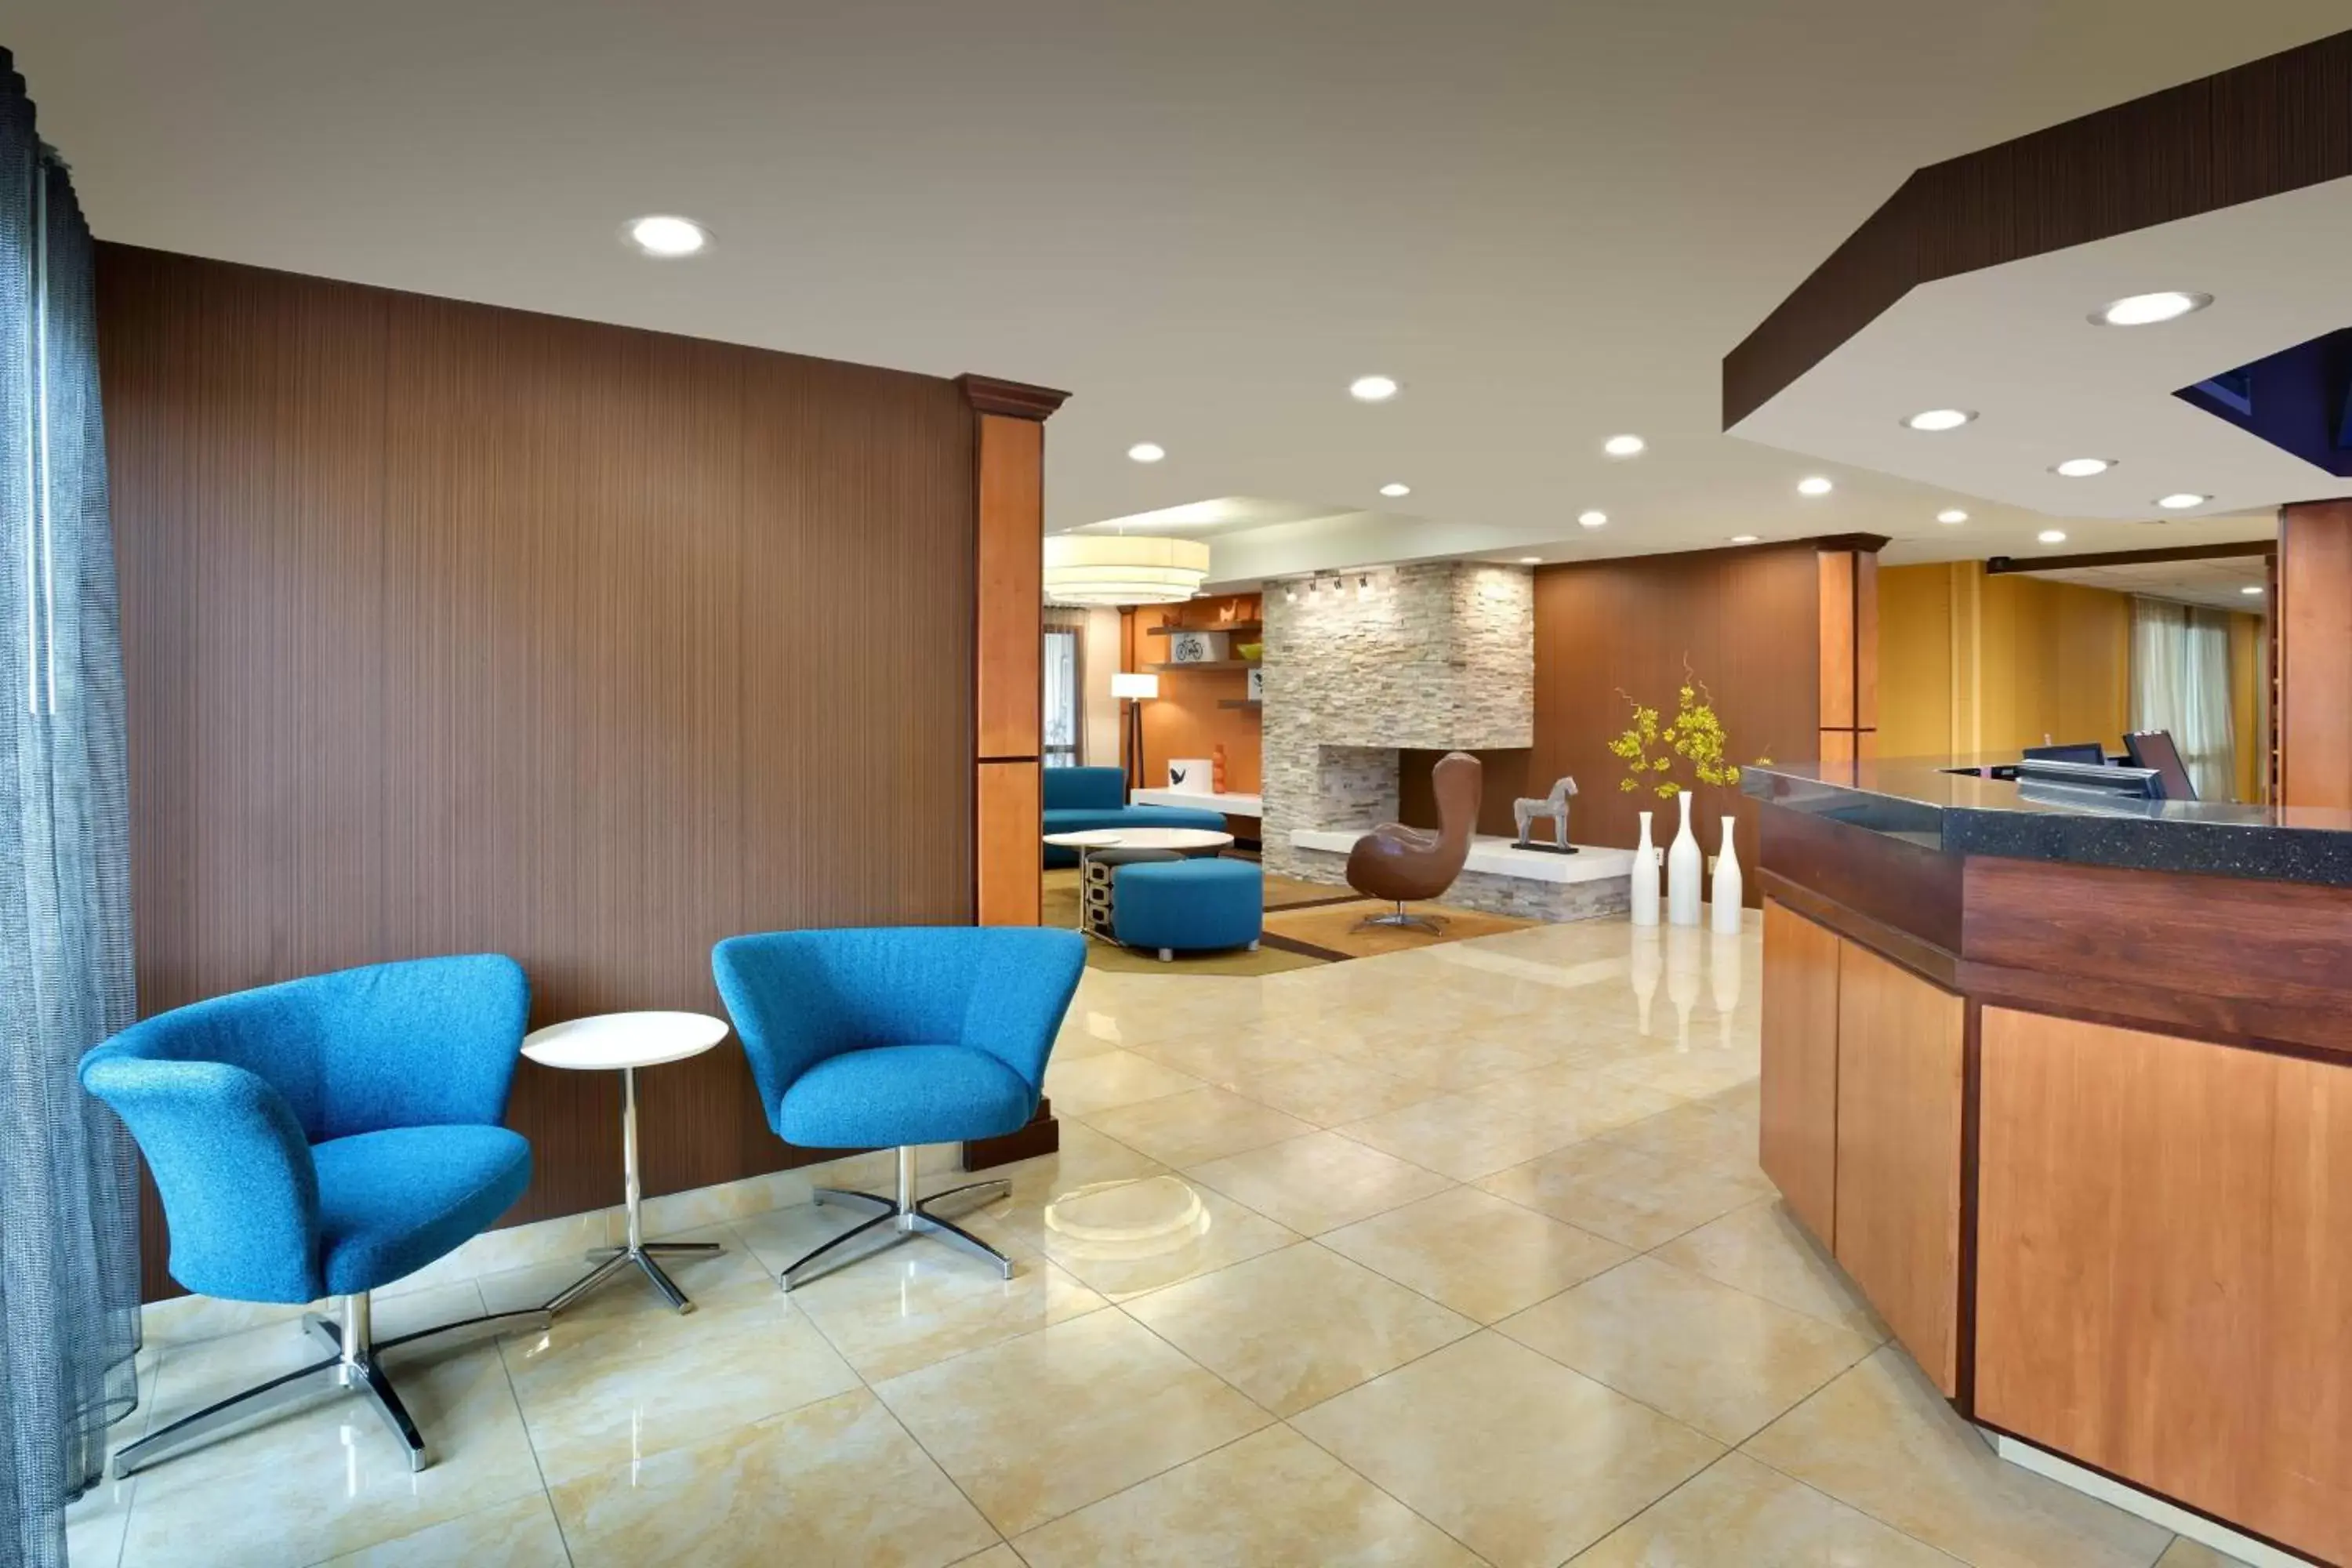 Lobby or reception, Lobby/Reception in Fairfield Inn & Suites Salt Lake City Airport